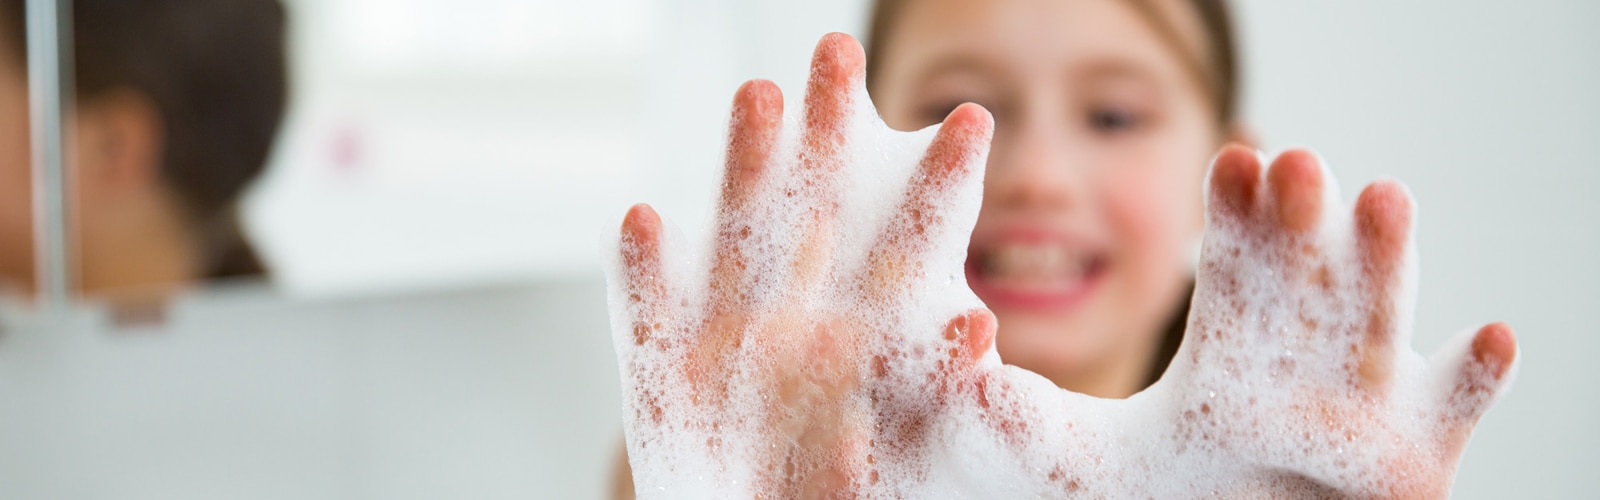 Ręce dziewczynki z pianą z mydła